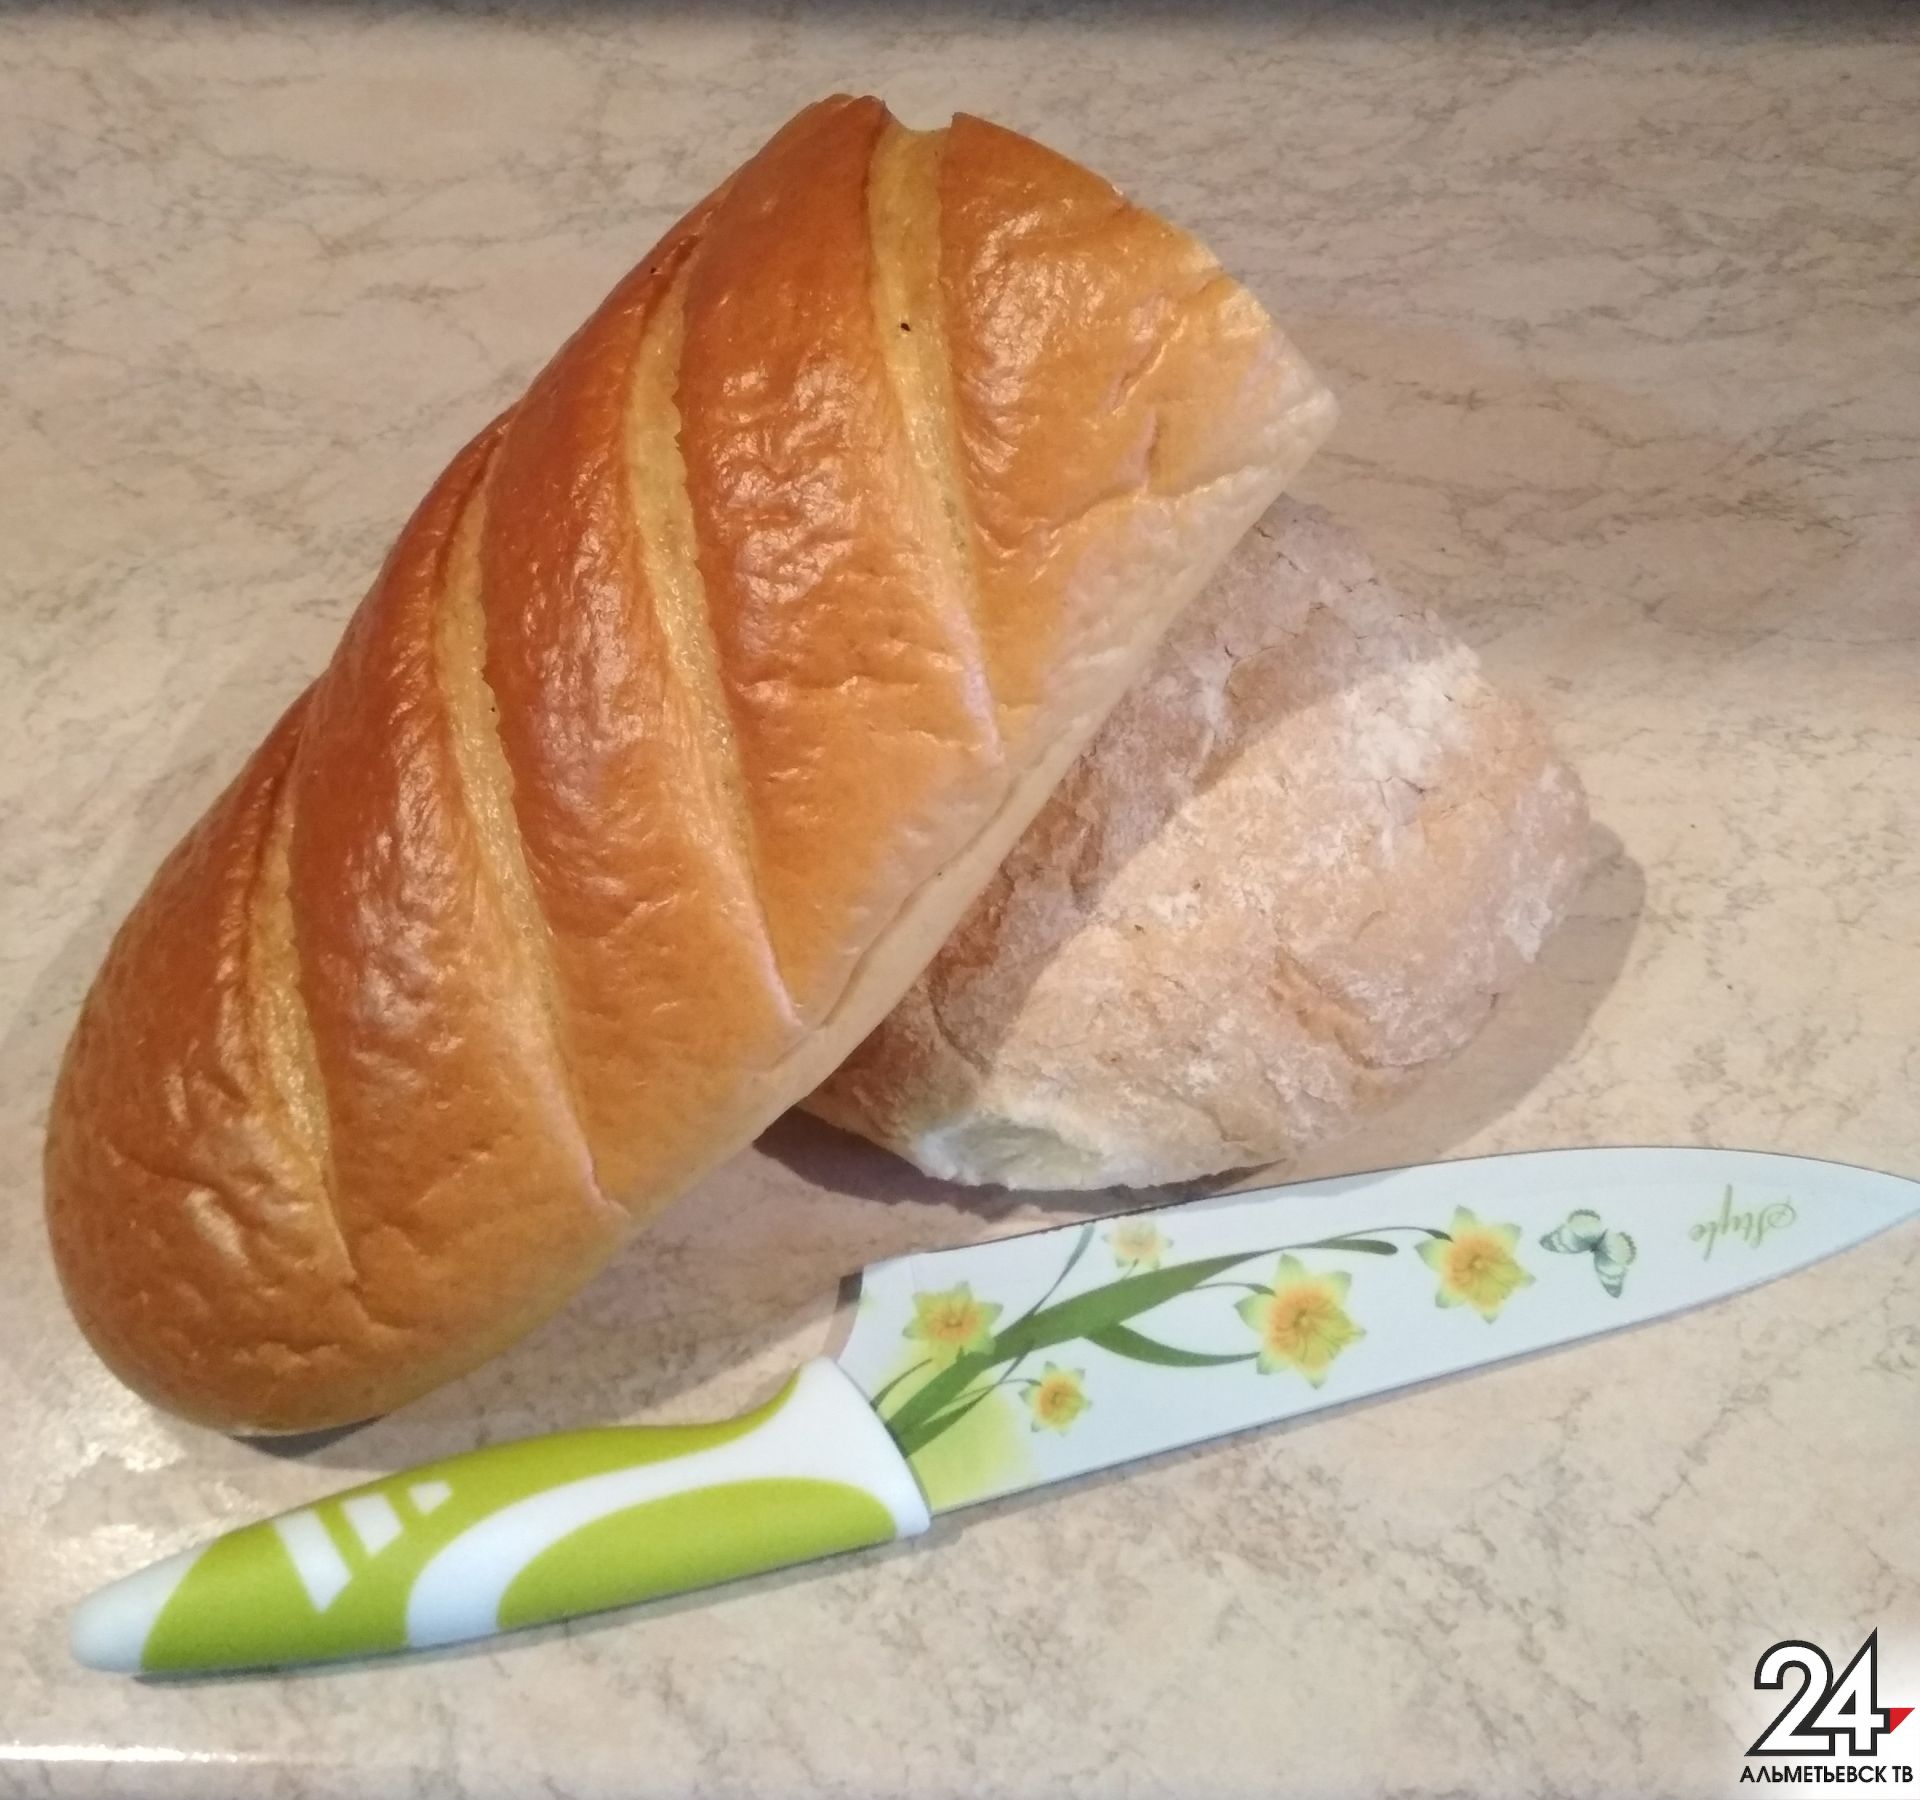 Около тонны некачественного хлеба было снято с прилавков магазинов Татарстана